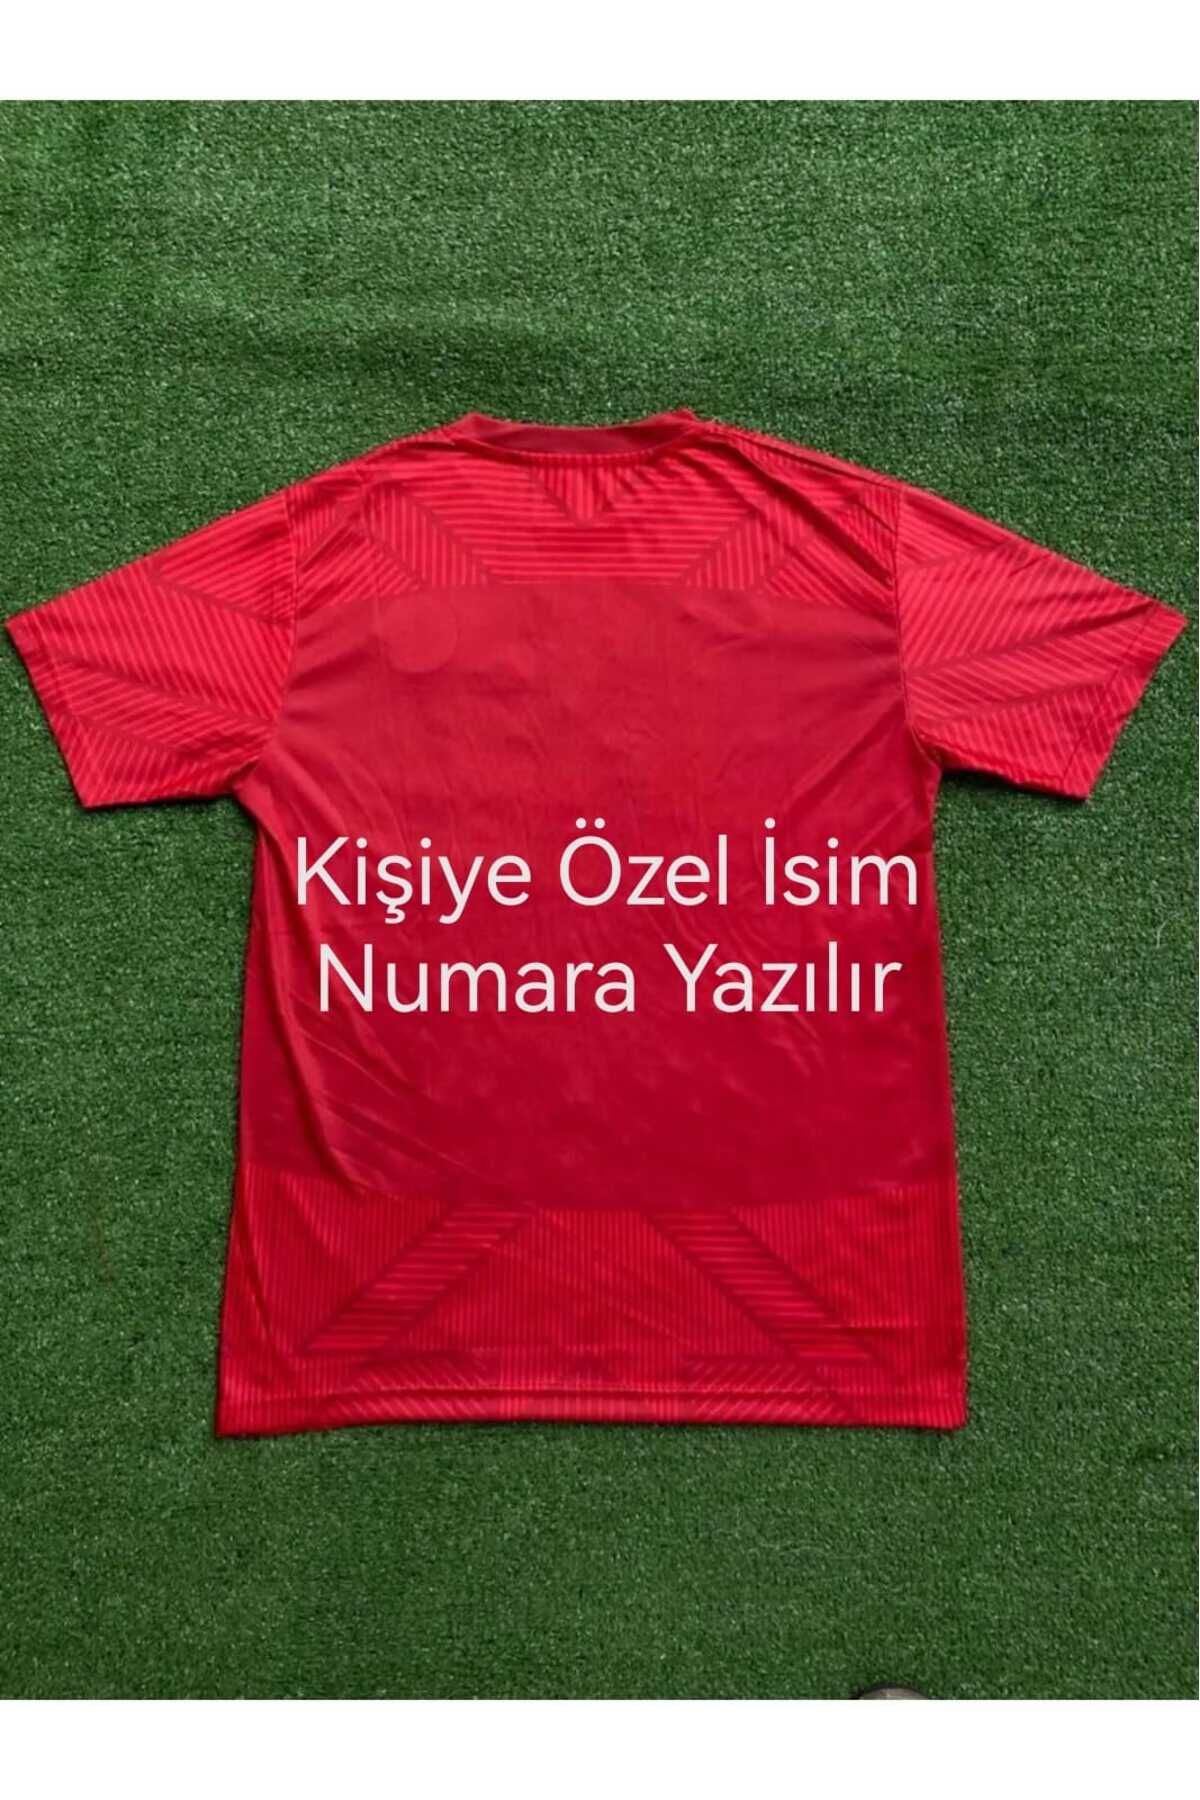 Nevruz Kişiye Özel Türkiye Milli Takım Forması Yeni Sezon